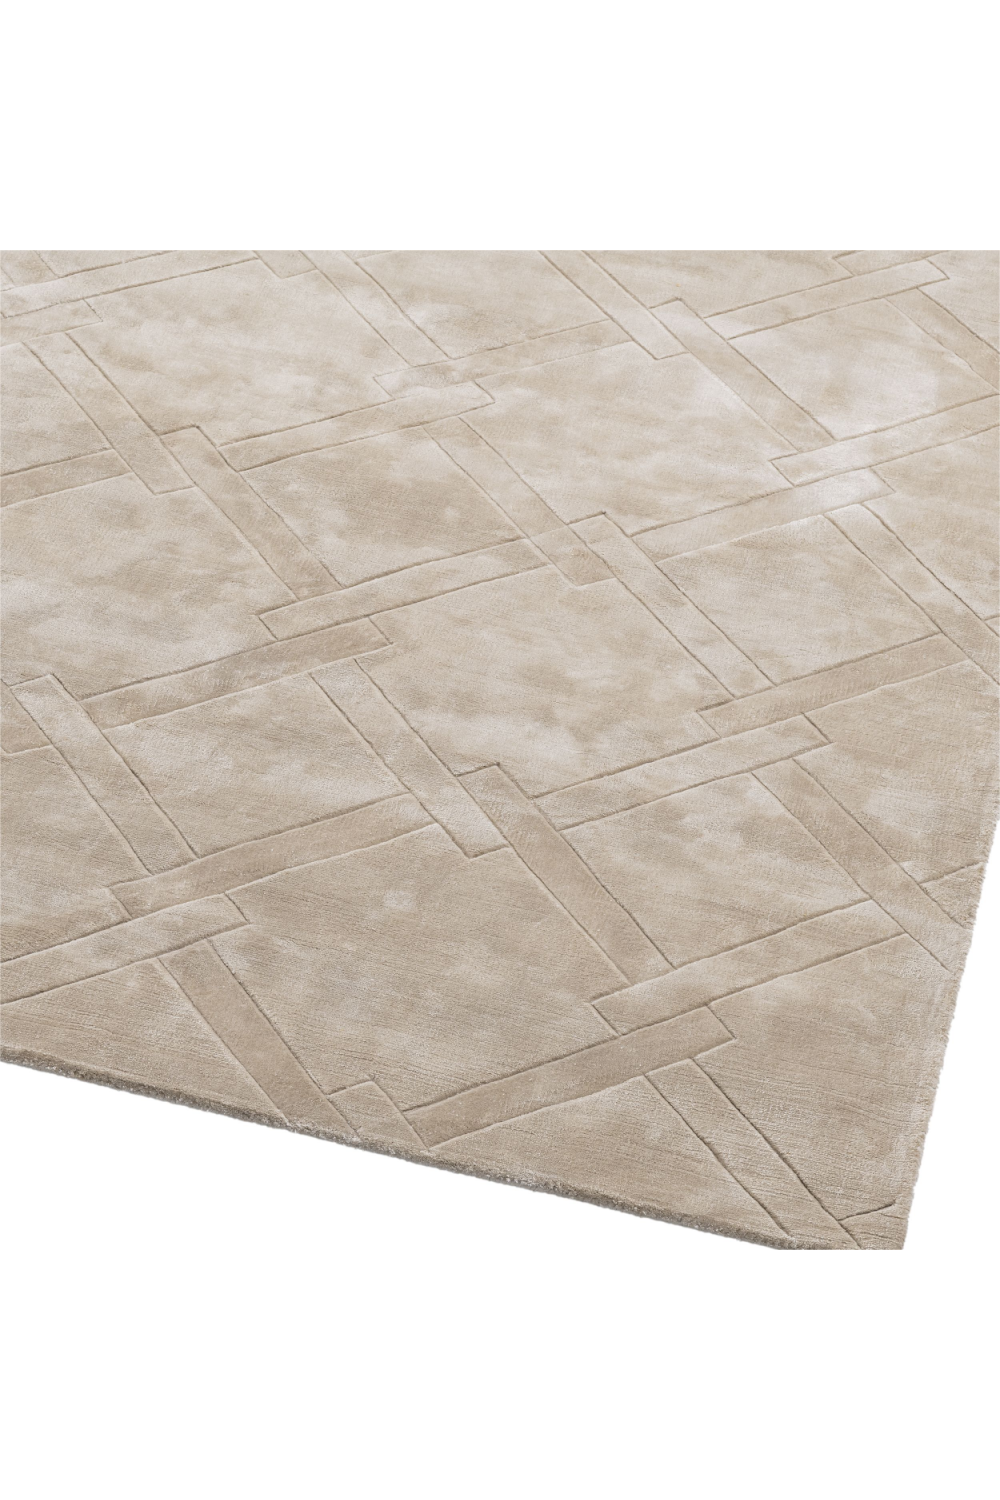 Hand Woven Plush Silver Sand Carpet 10' x 13' | Eichholtz La Belle | Oroa.com